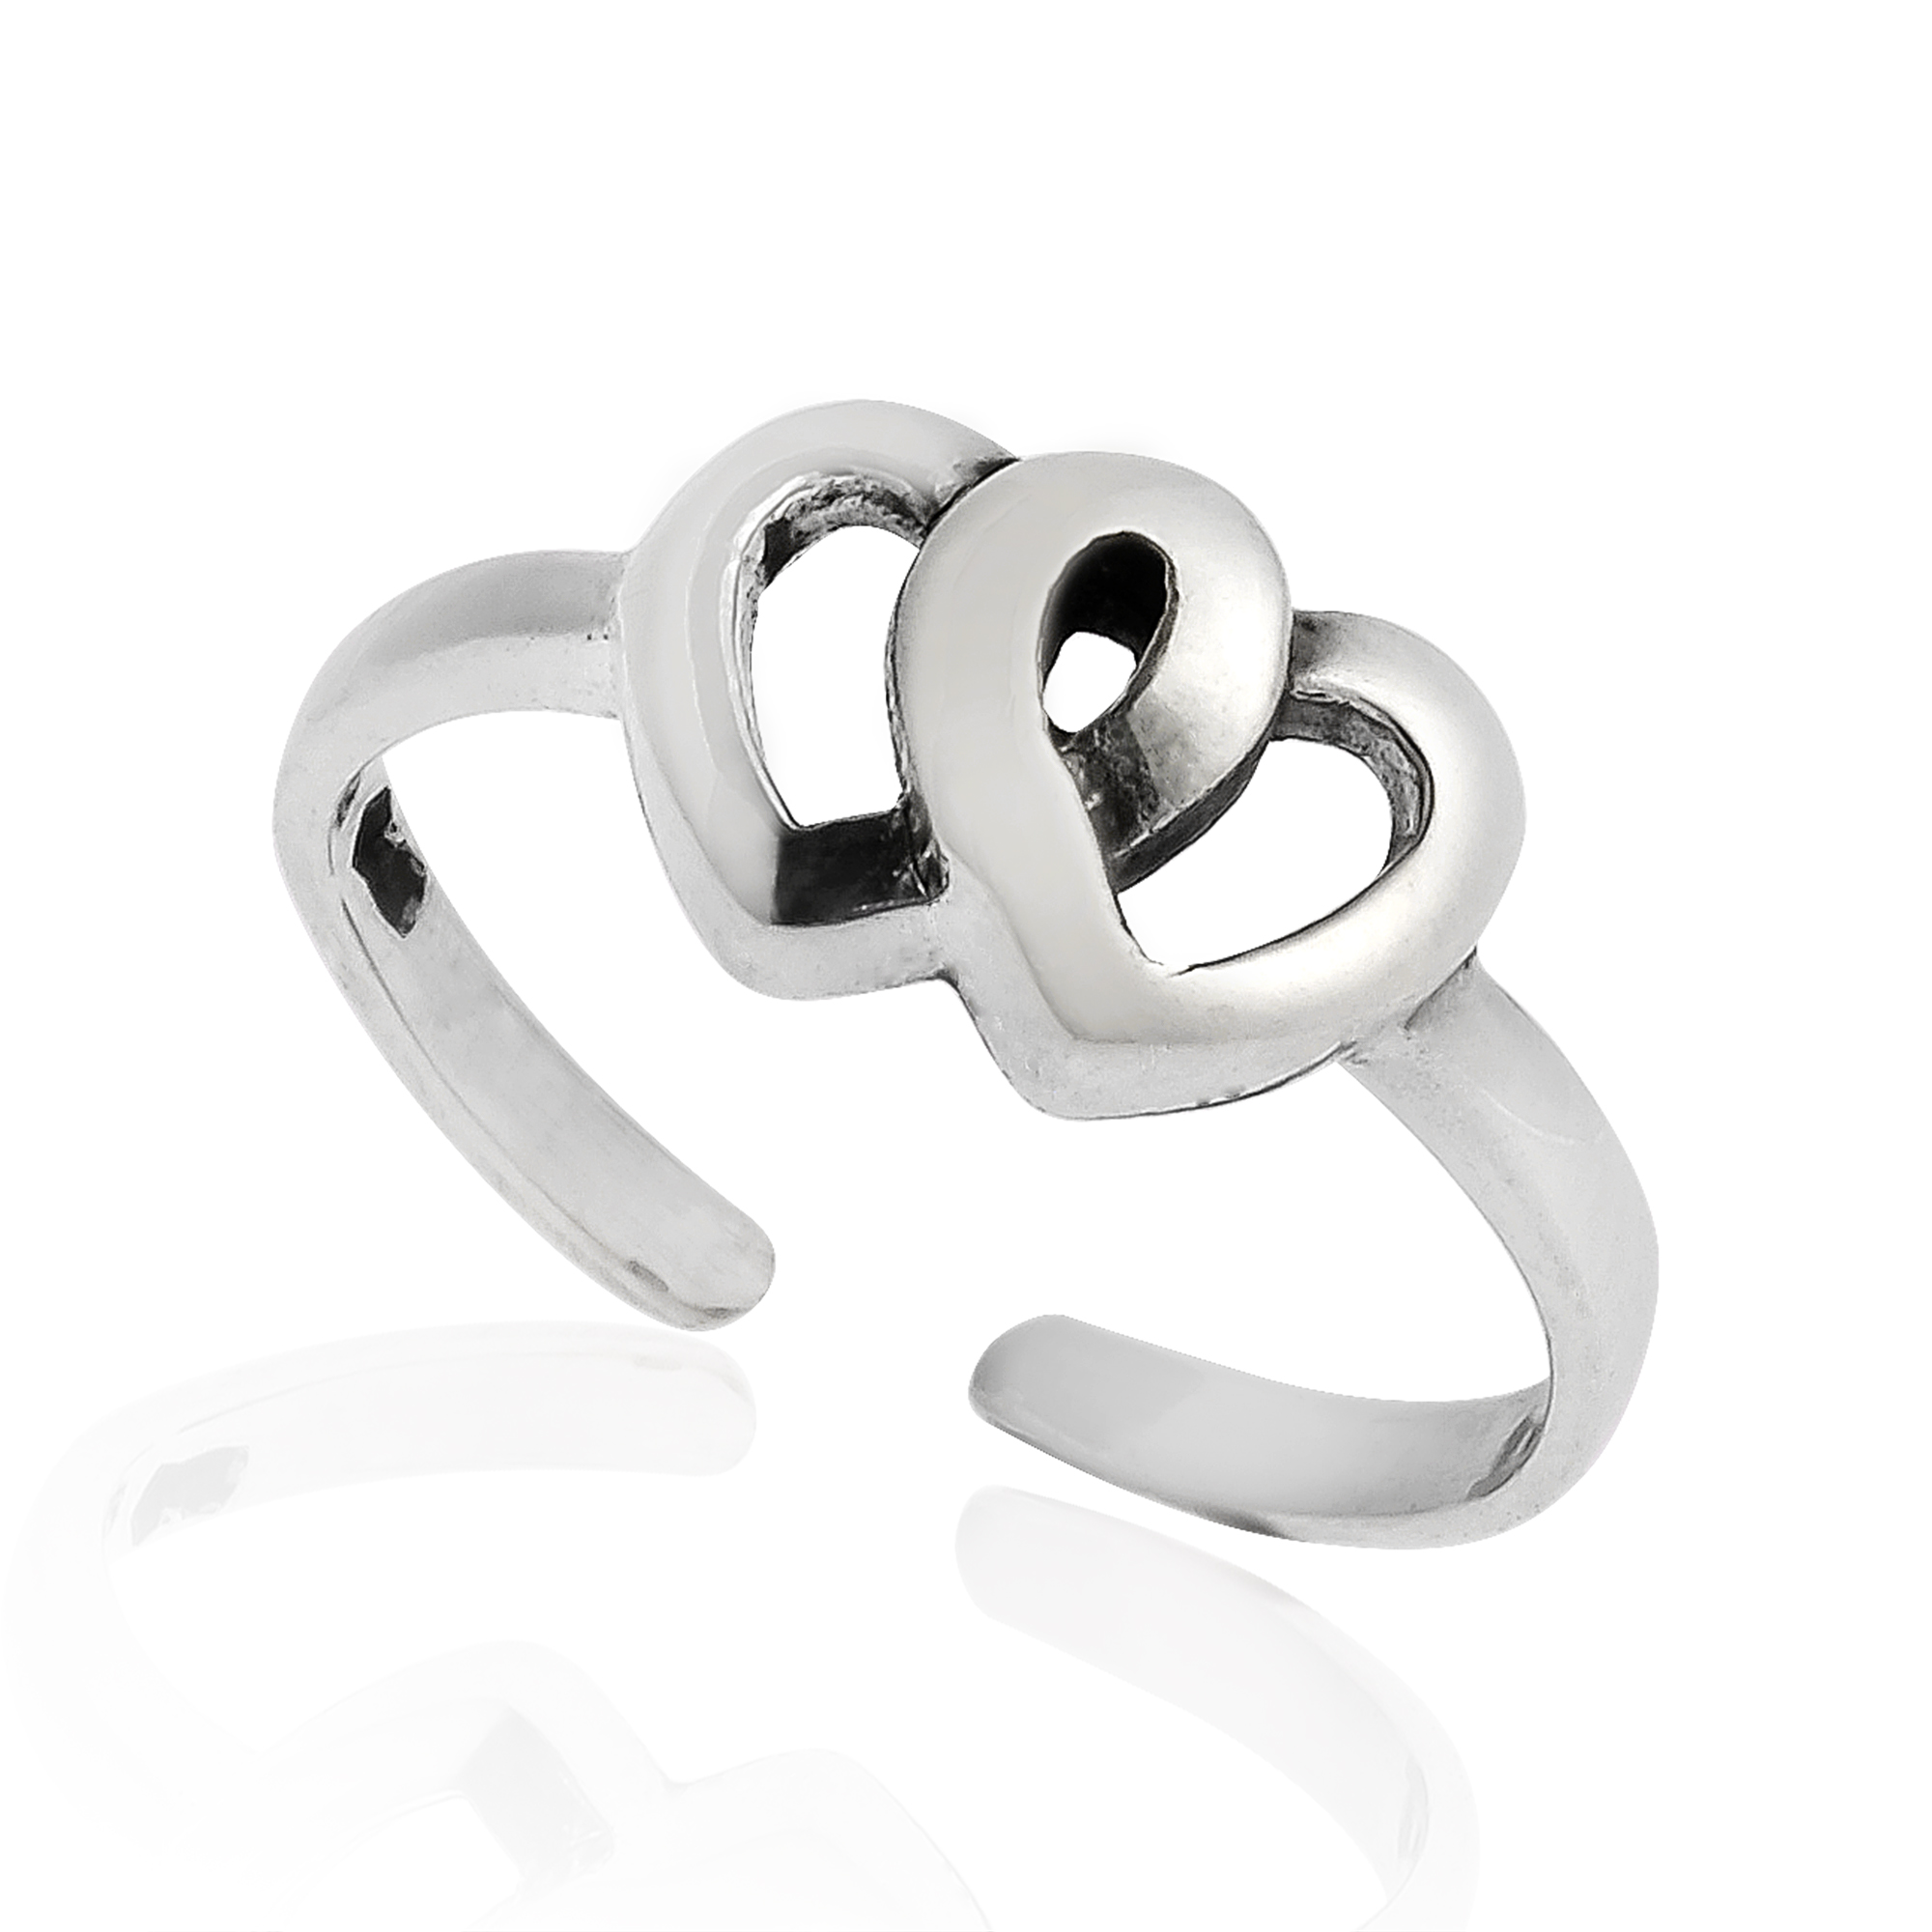 Interlocked Love Double Heart Sterling Silver Toe or Pinky Ring | eBay